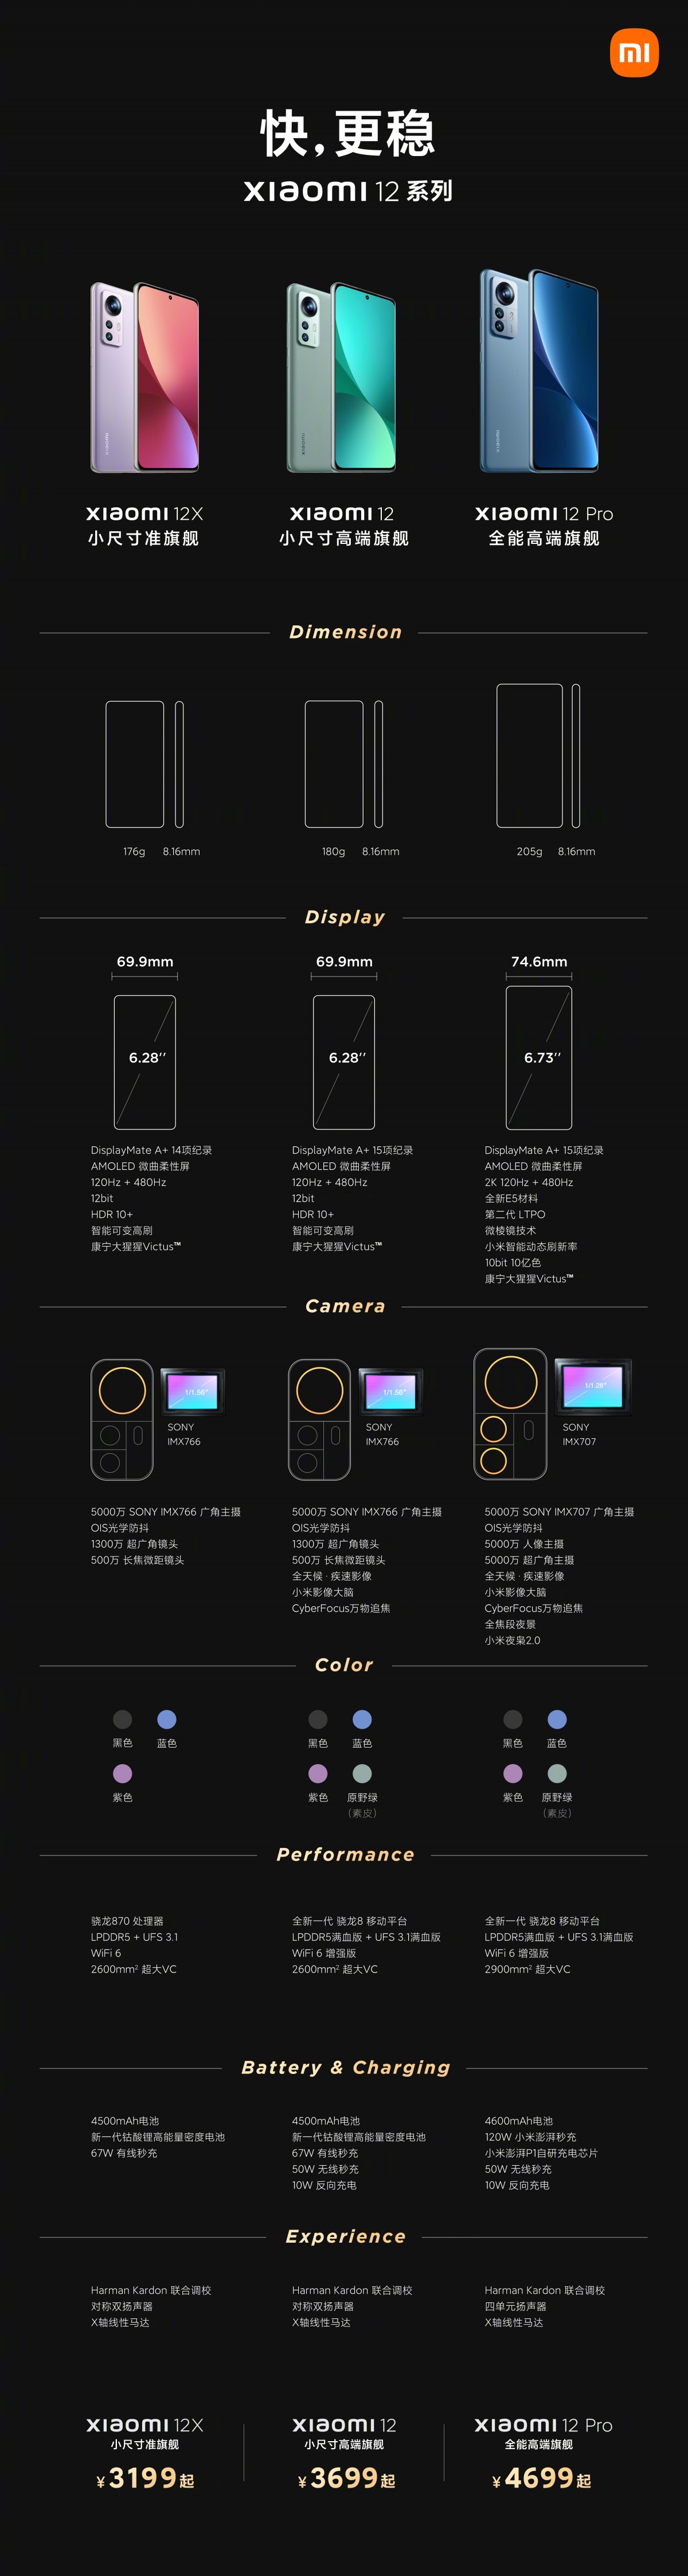  Еженедельный опрос: что вы думаете о серии Xiaomi 12? 